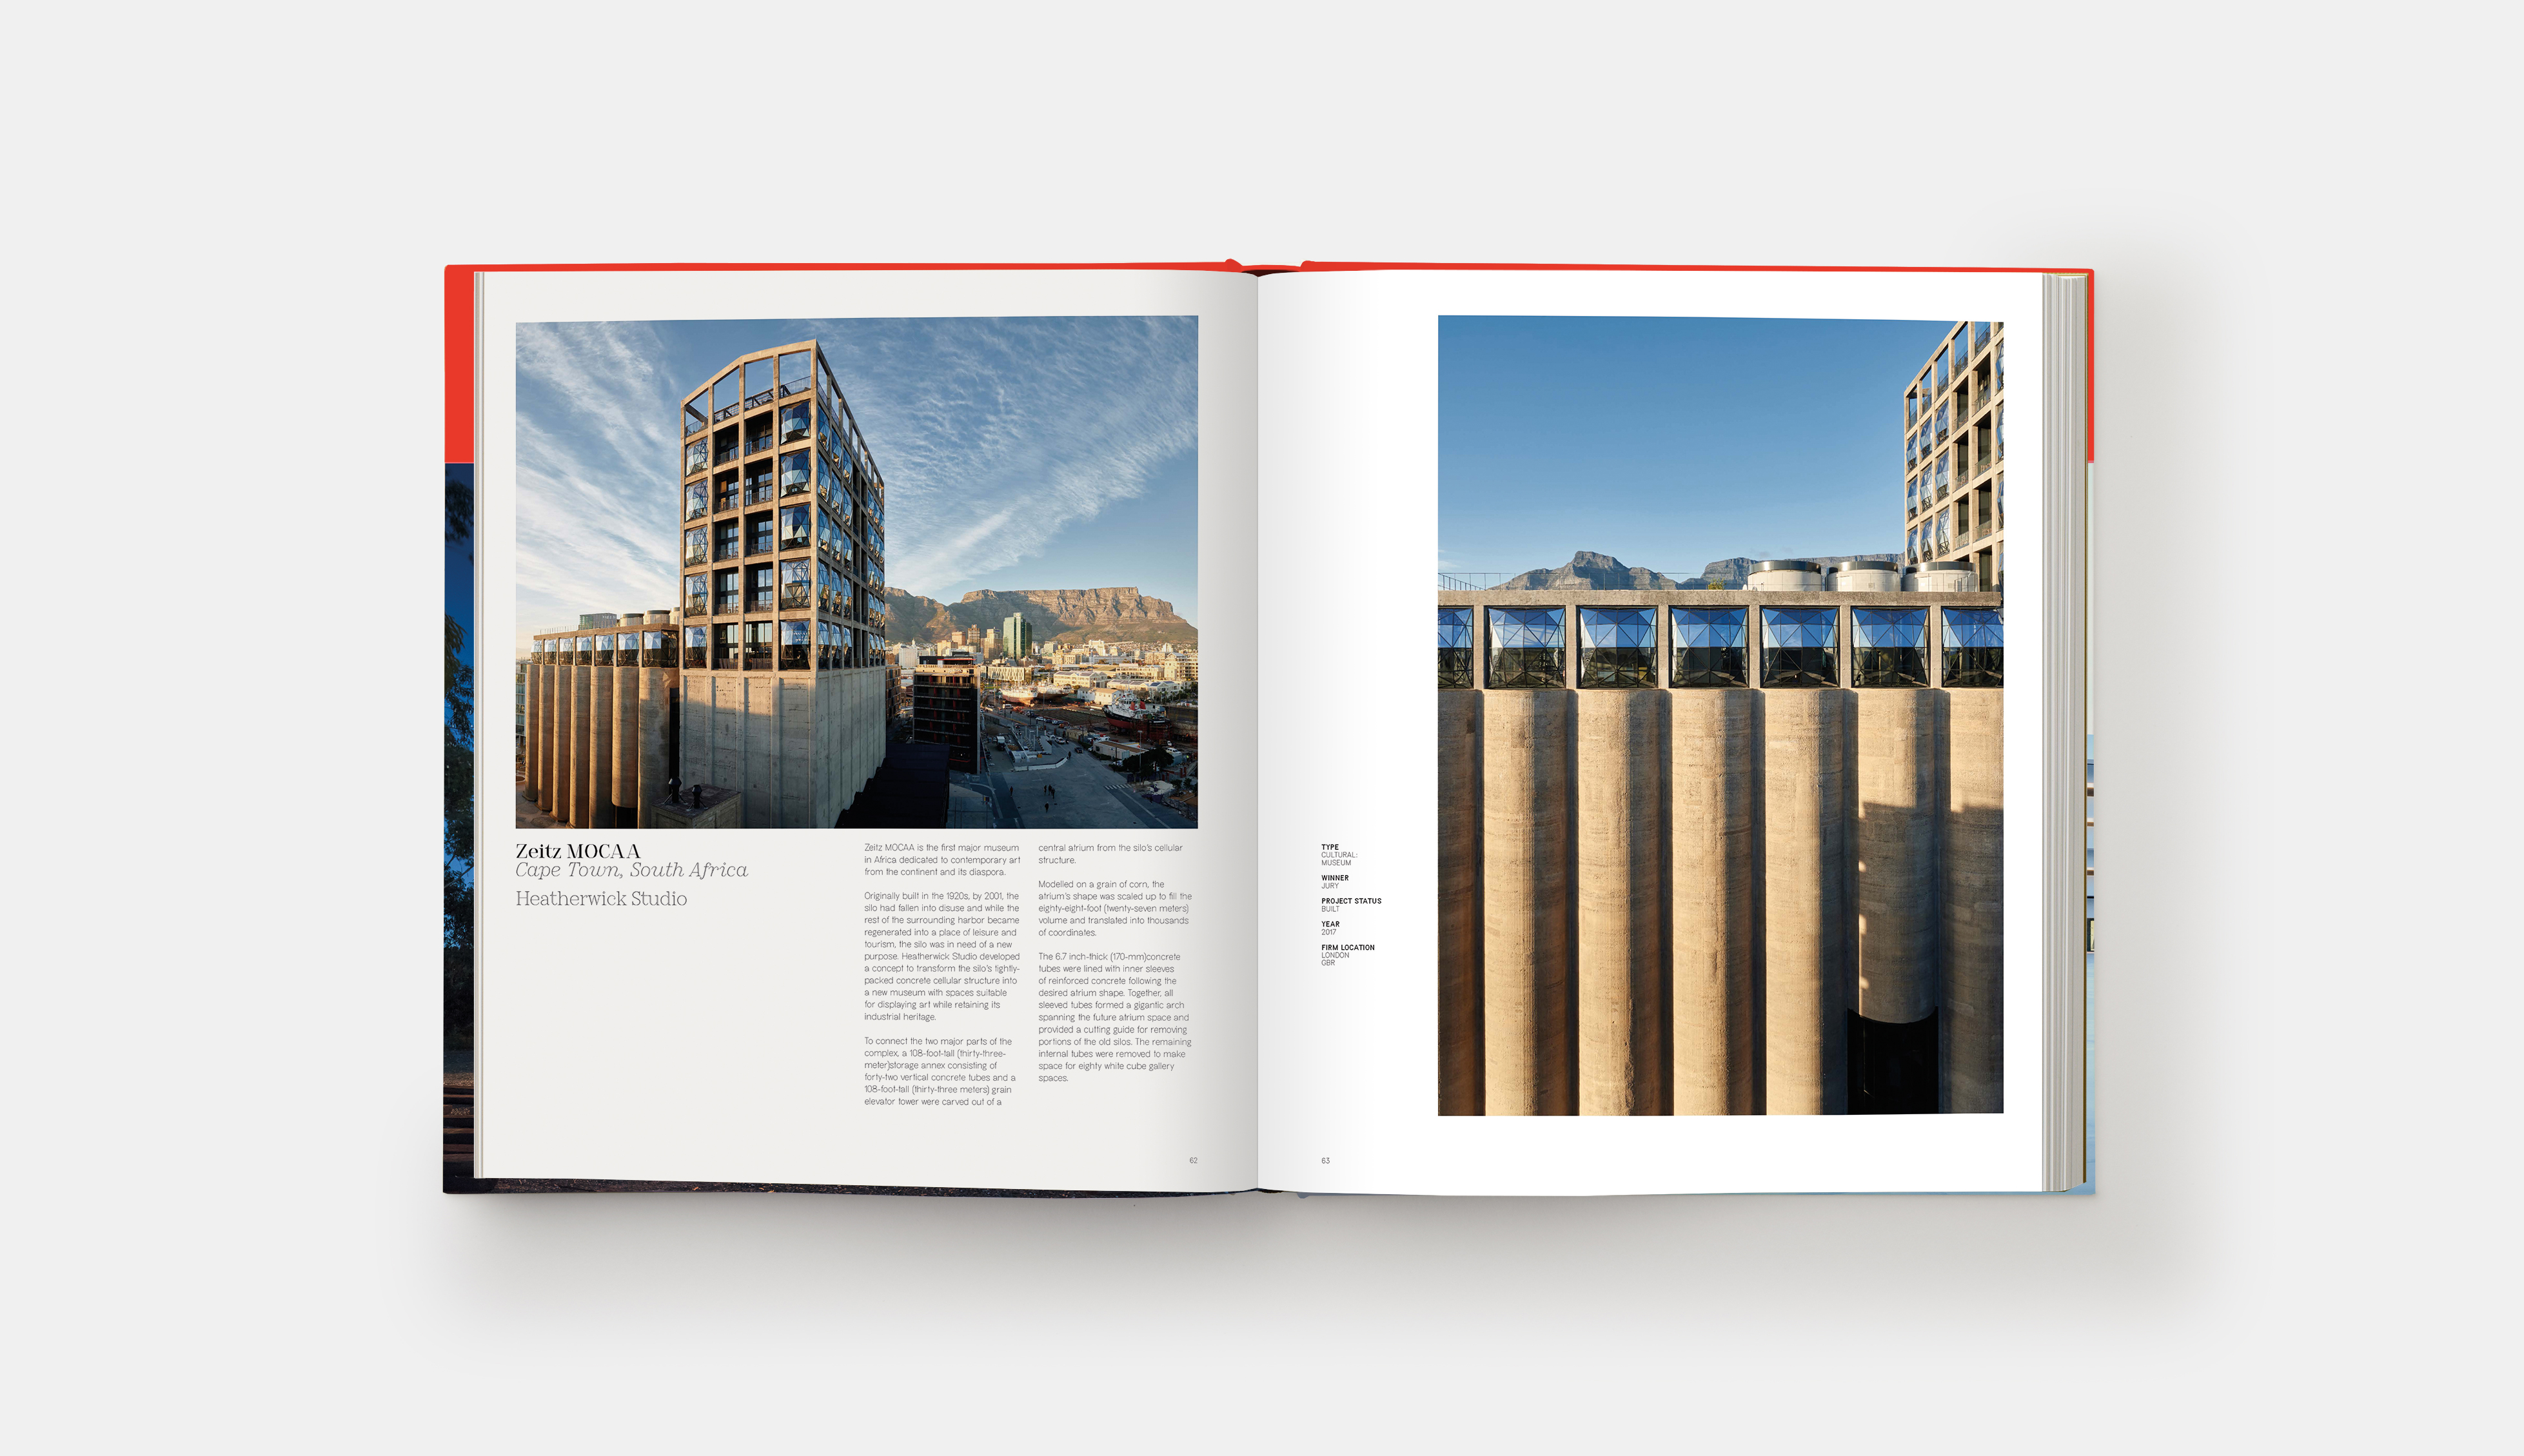 Phaidon Book 2018 World's Best Architecture